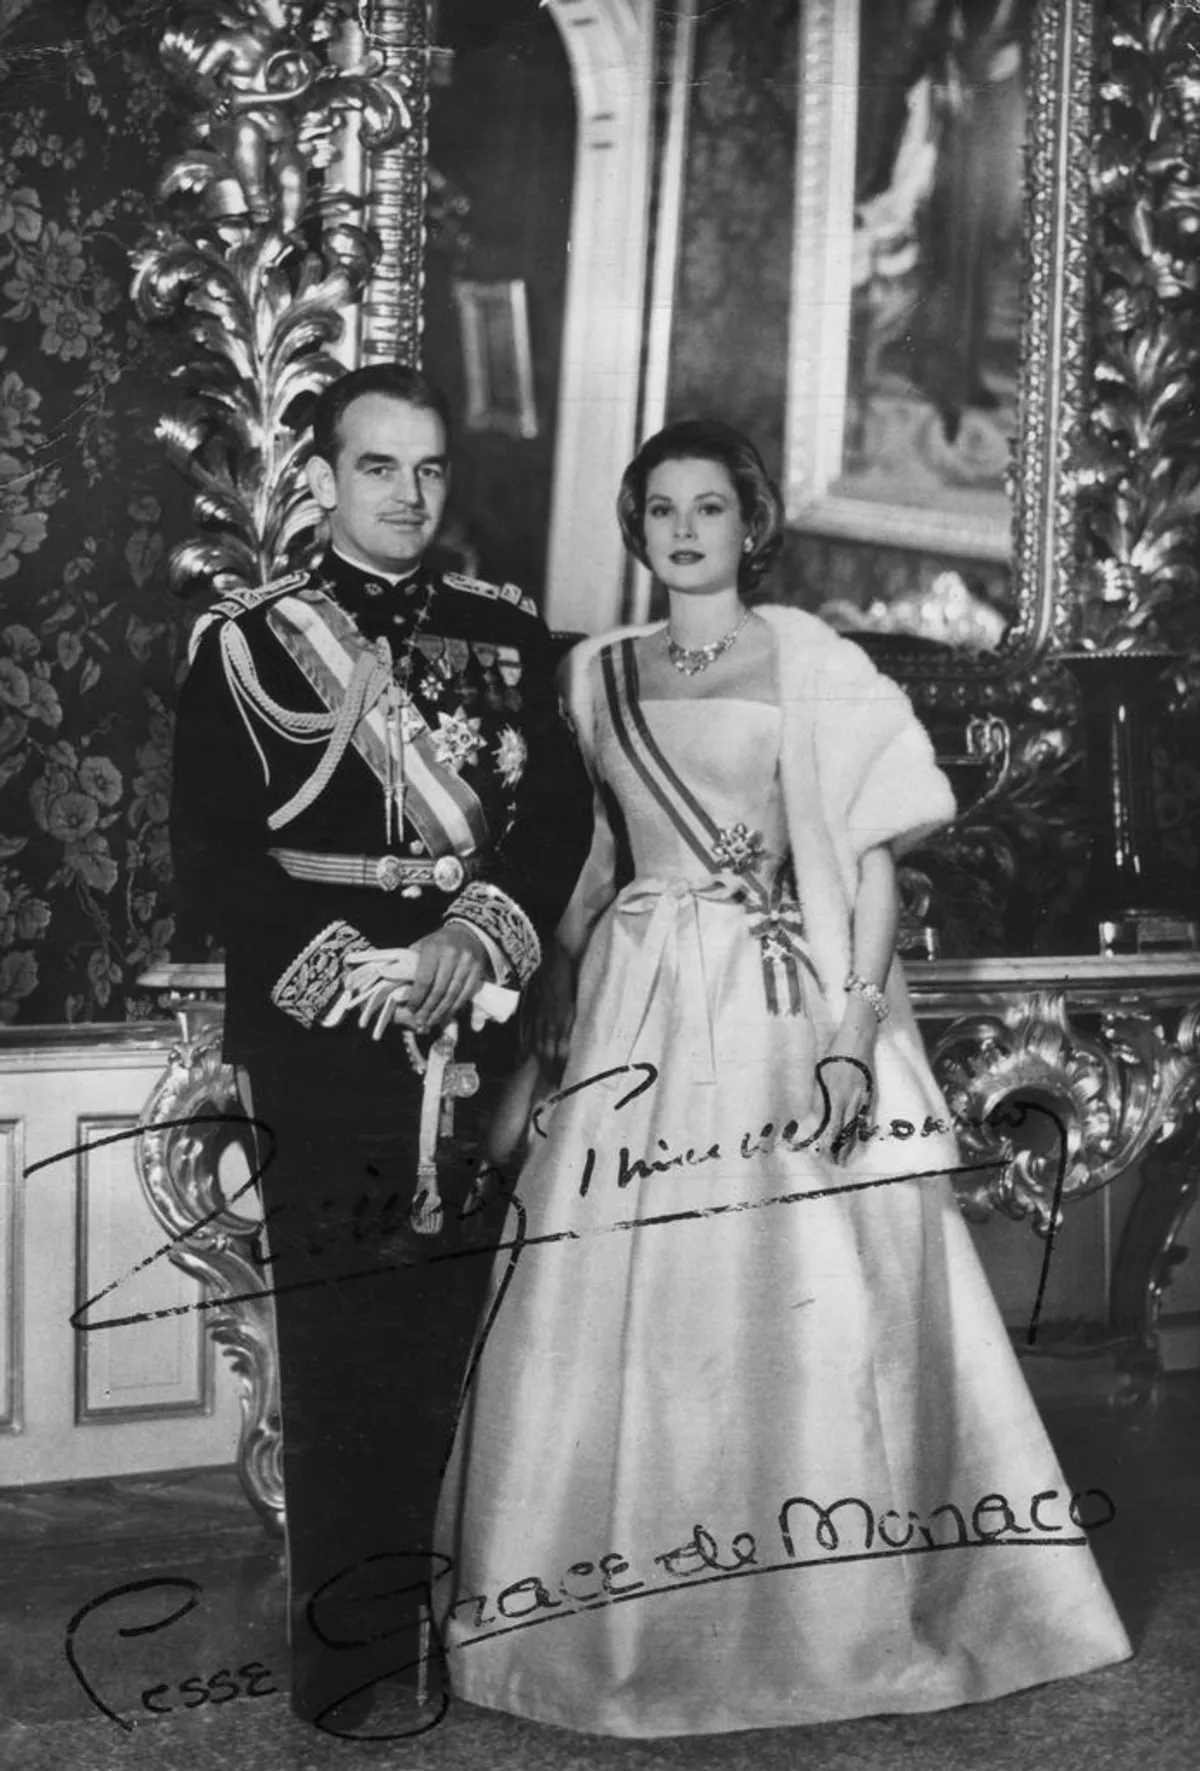 Le prince Rainier III et la princesse Grace Kelly de Monaco lors de leur mariage, XXe siècle. | Photo : Getty Images